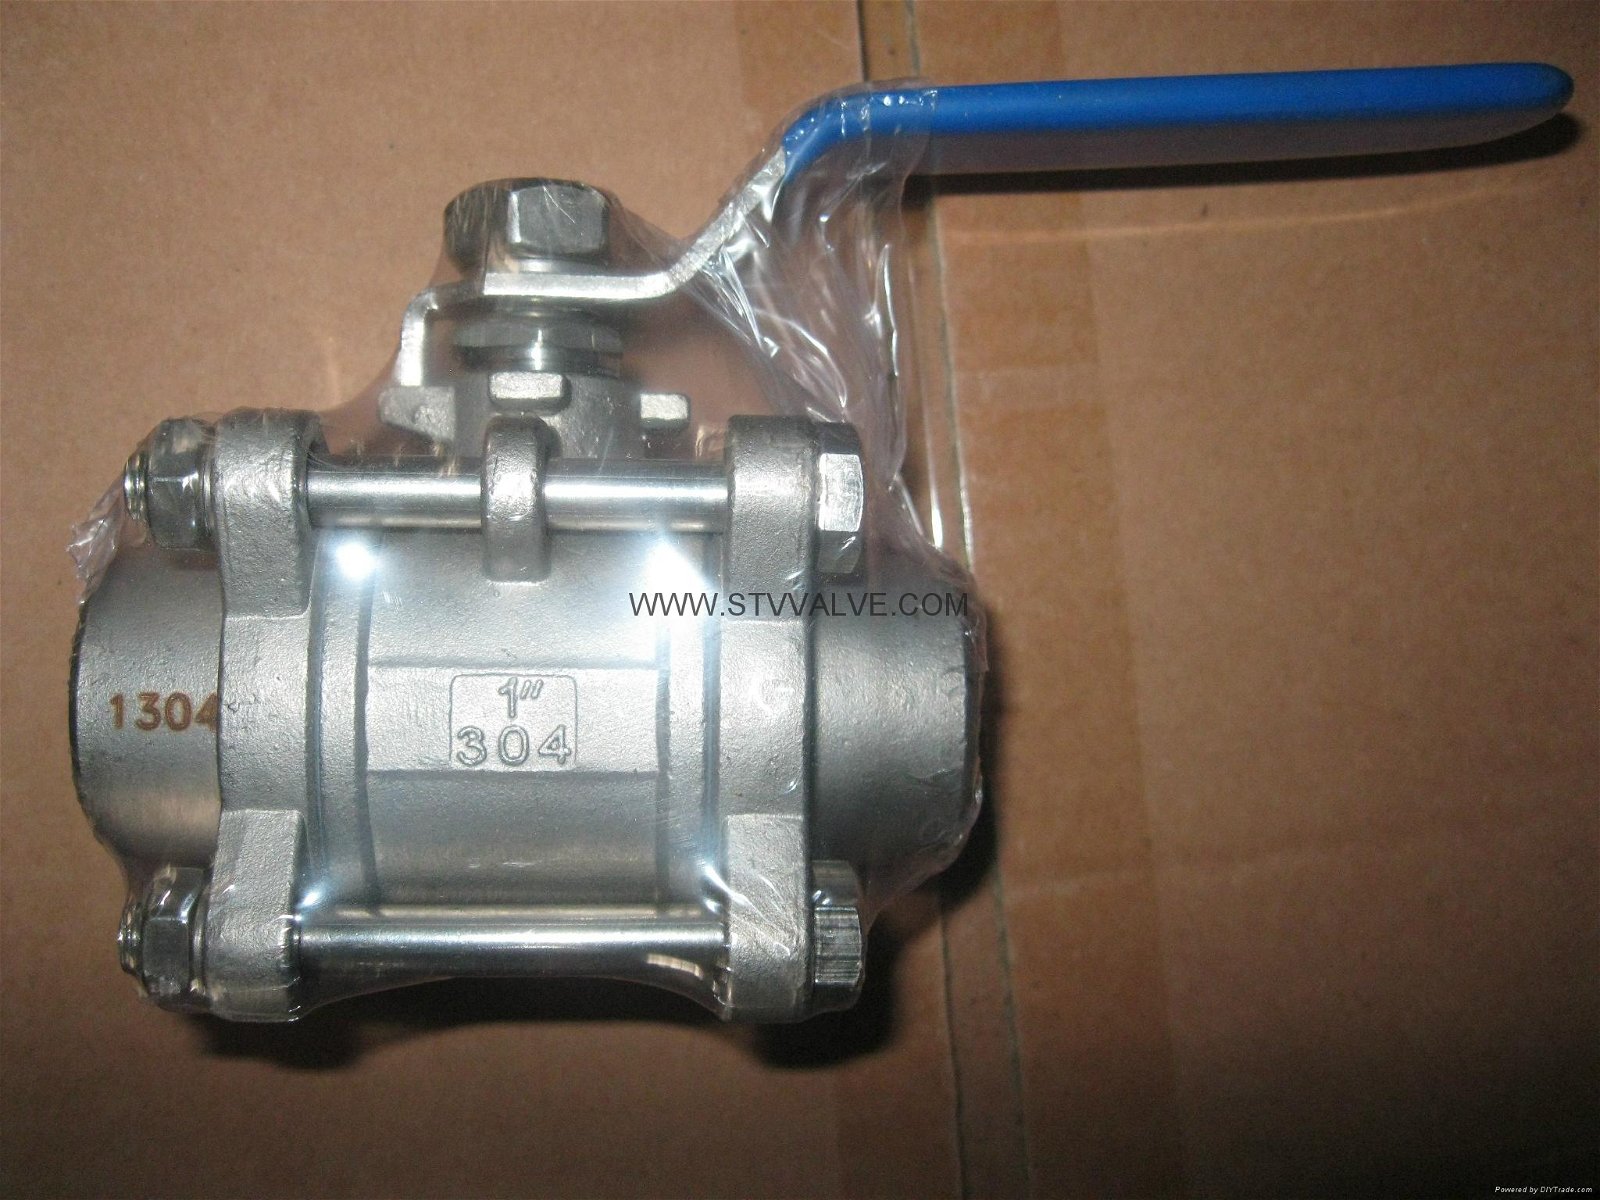  welded ball valve